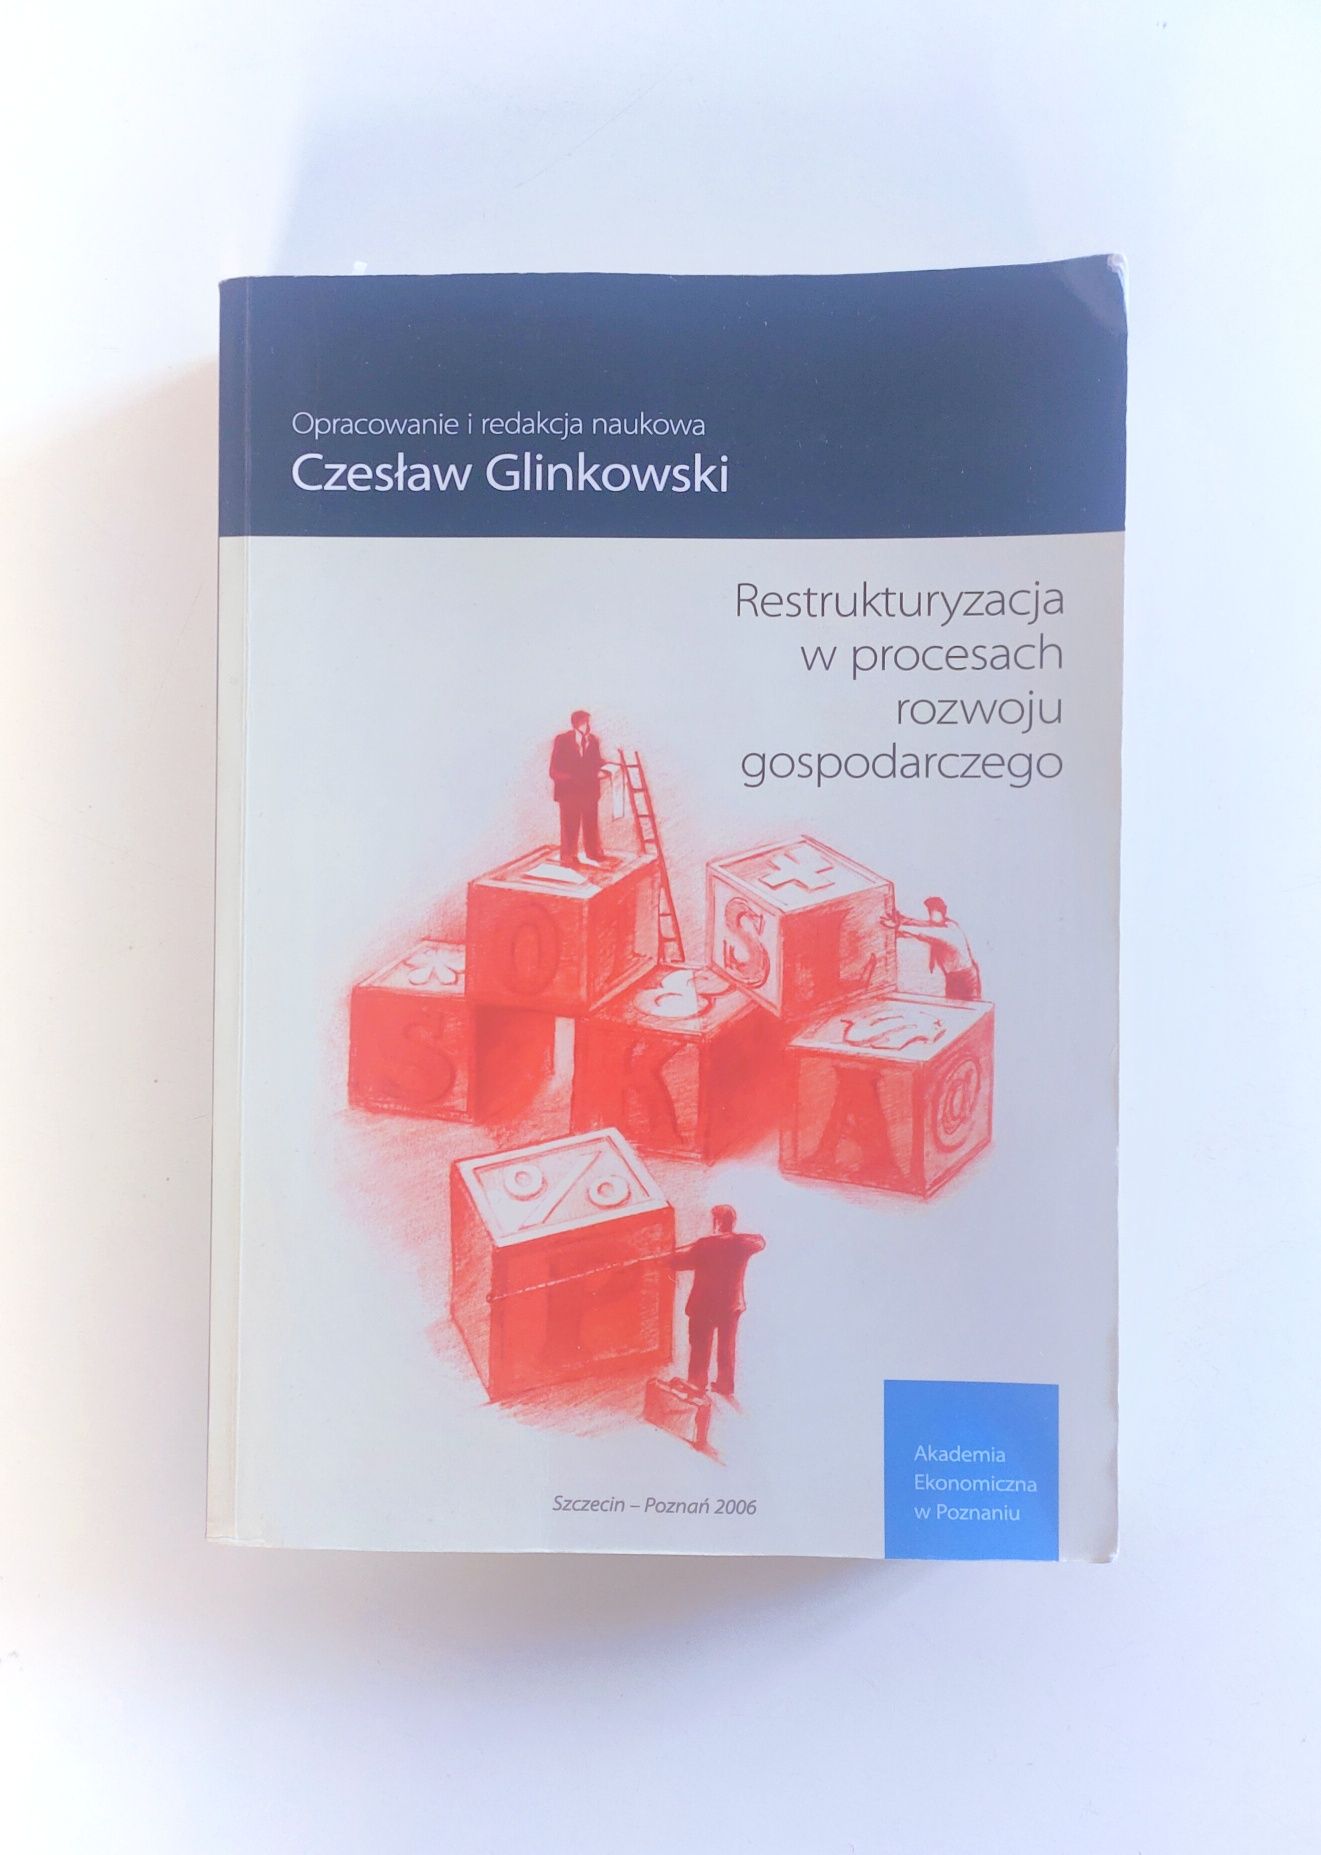 Czesław Glinkowski "Restrukturyzacja w procesach rozwoju gospodarczego